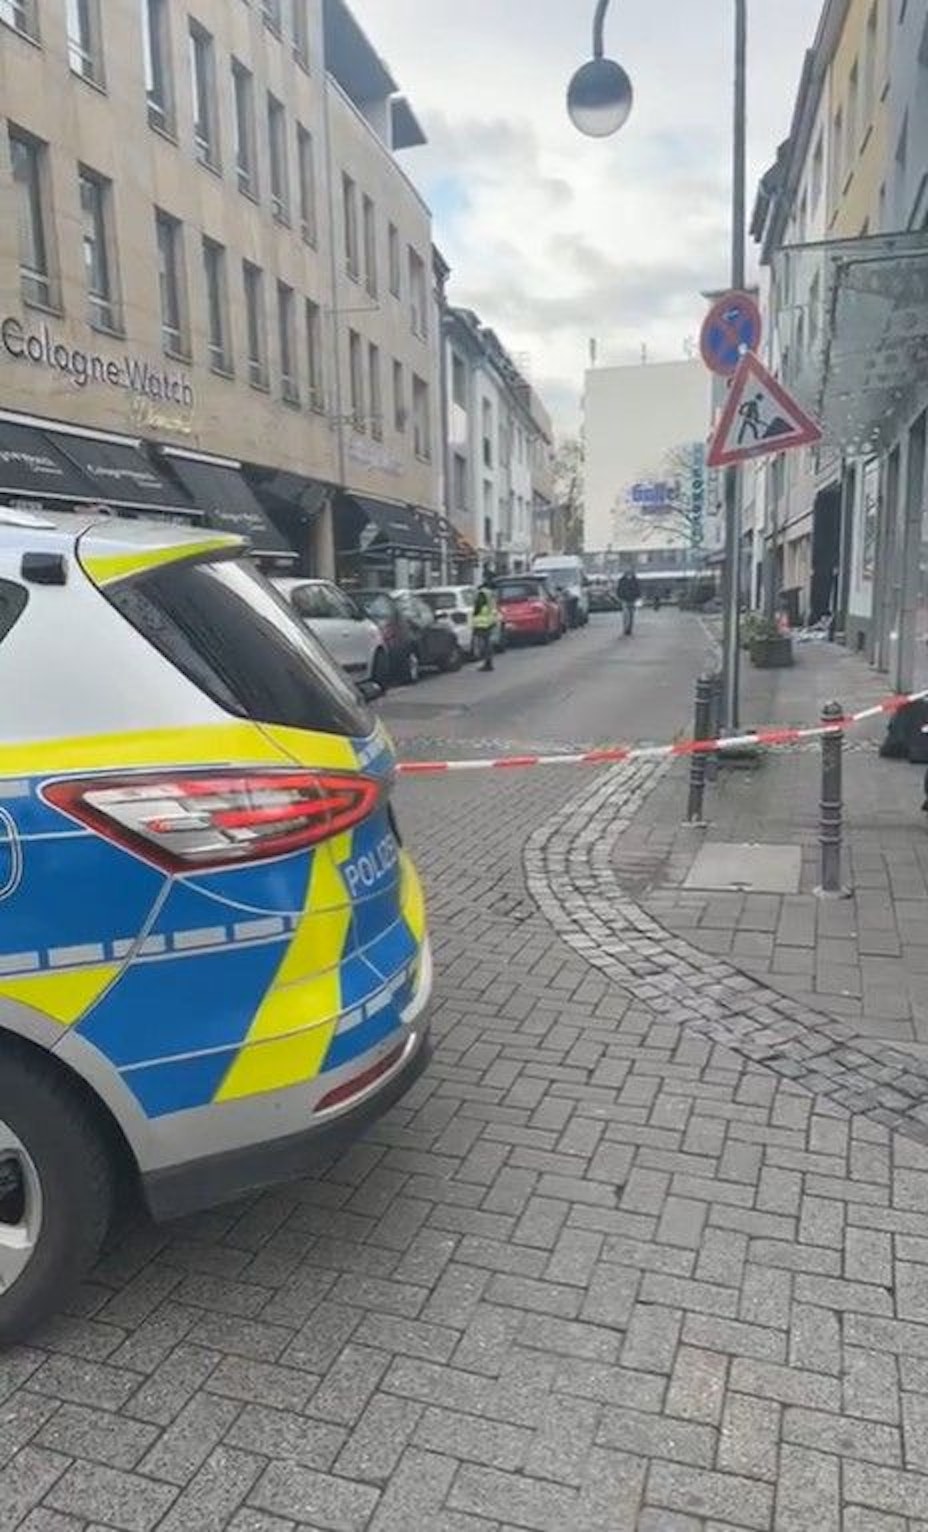 Unbekannte Täter haben die Fensterfassade des Juweliergeschäfts Cologne Watch in der Kölner Innenstadt gesprengt.